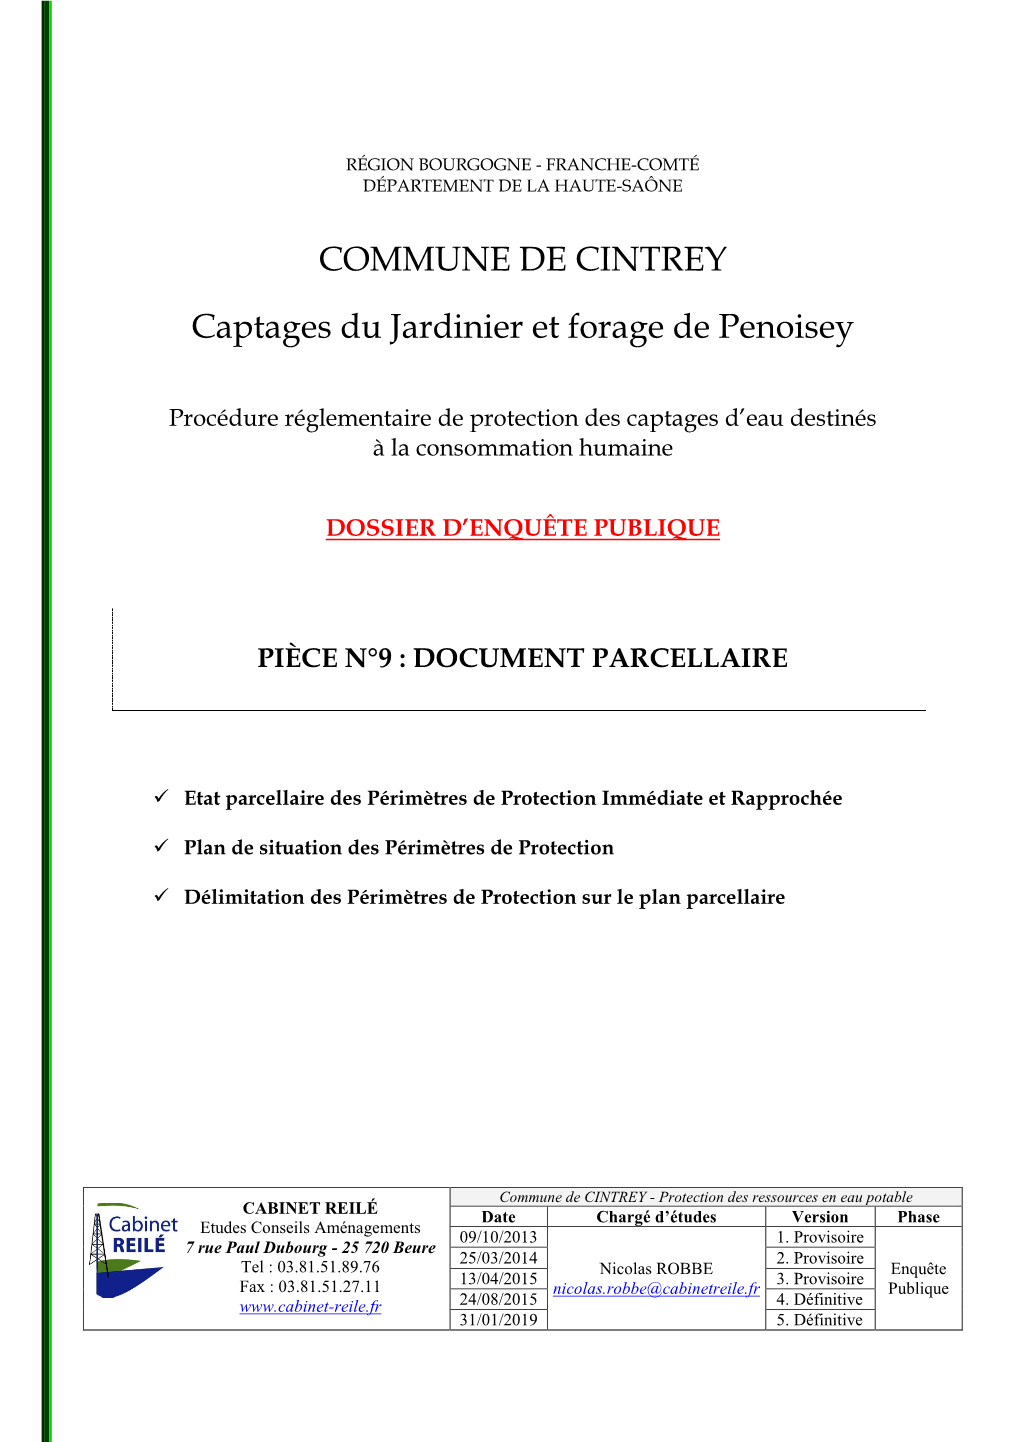 COMMUNE DE CINTREY Captages Du Jardinier Et Forage De Penoisey